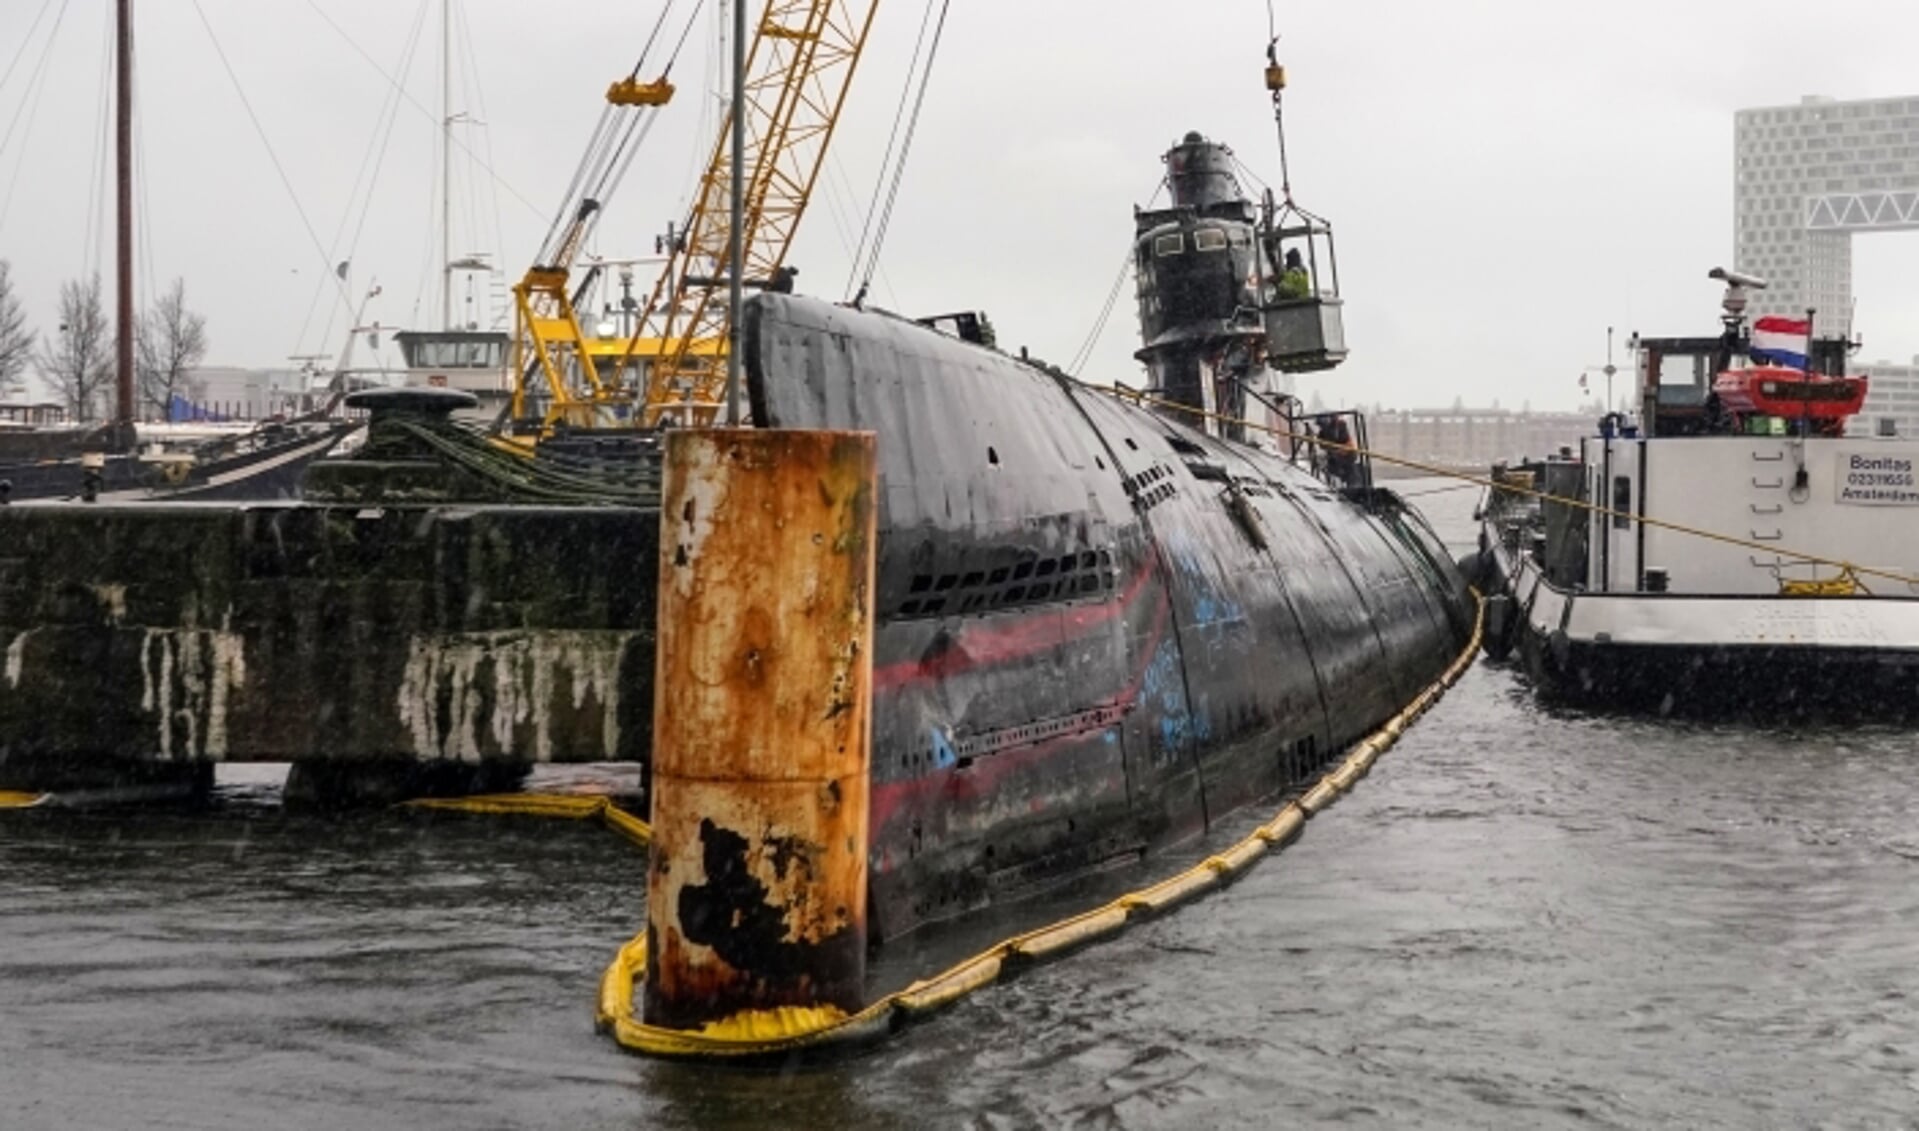 Onderzeeboot Foxtrot heeft definitief zijn plek bij het NDSM-werf verlaten. 